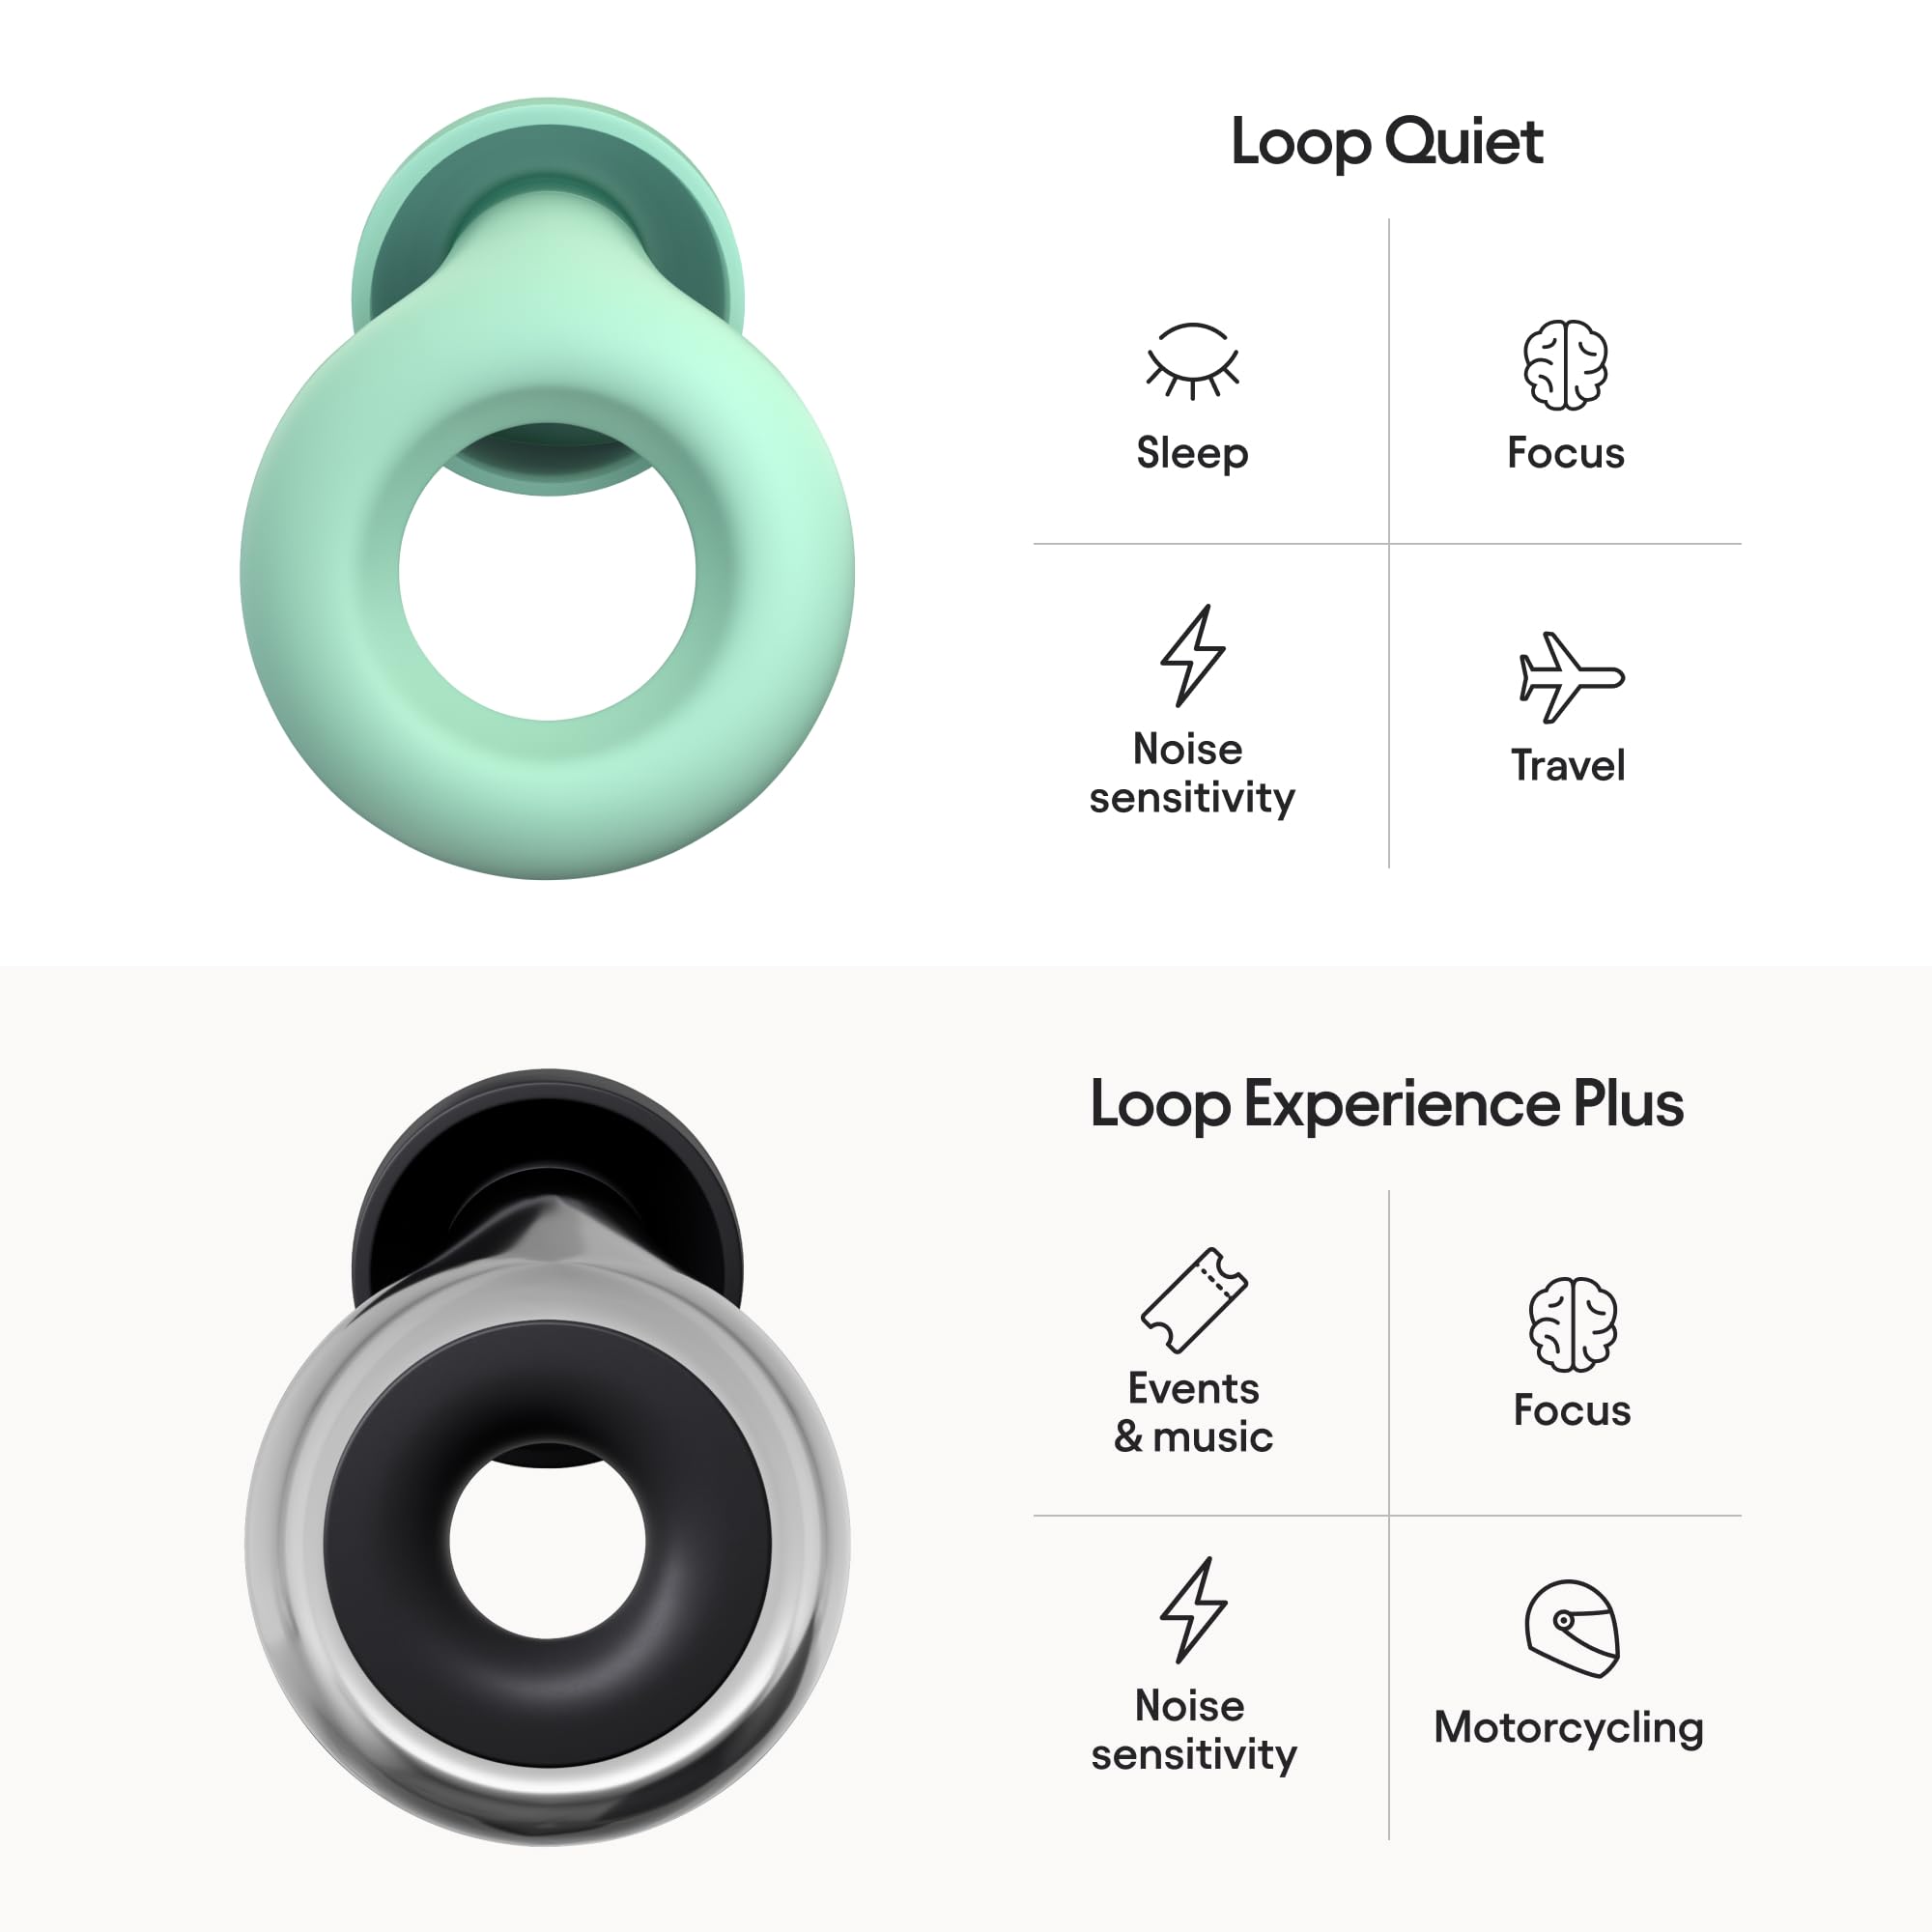 Loop Earplugs Day & Night Plus Bundle (2-Pack) – Loop Quiet + Loop Experience Plus | Reusable Ear Plugs for Sleep, Focus, Noise Sensitivity, Music, Events & More | 26 dB/18 dB Noise Reduction